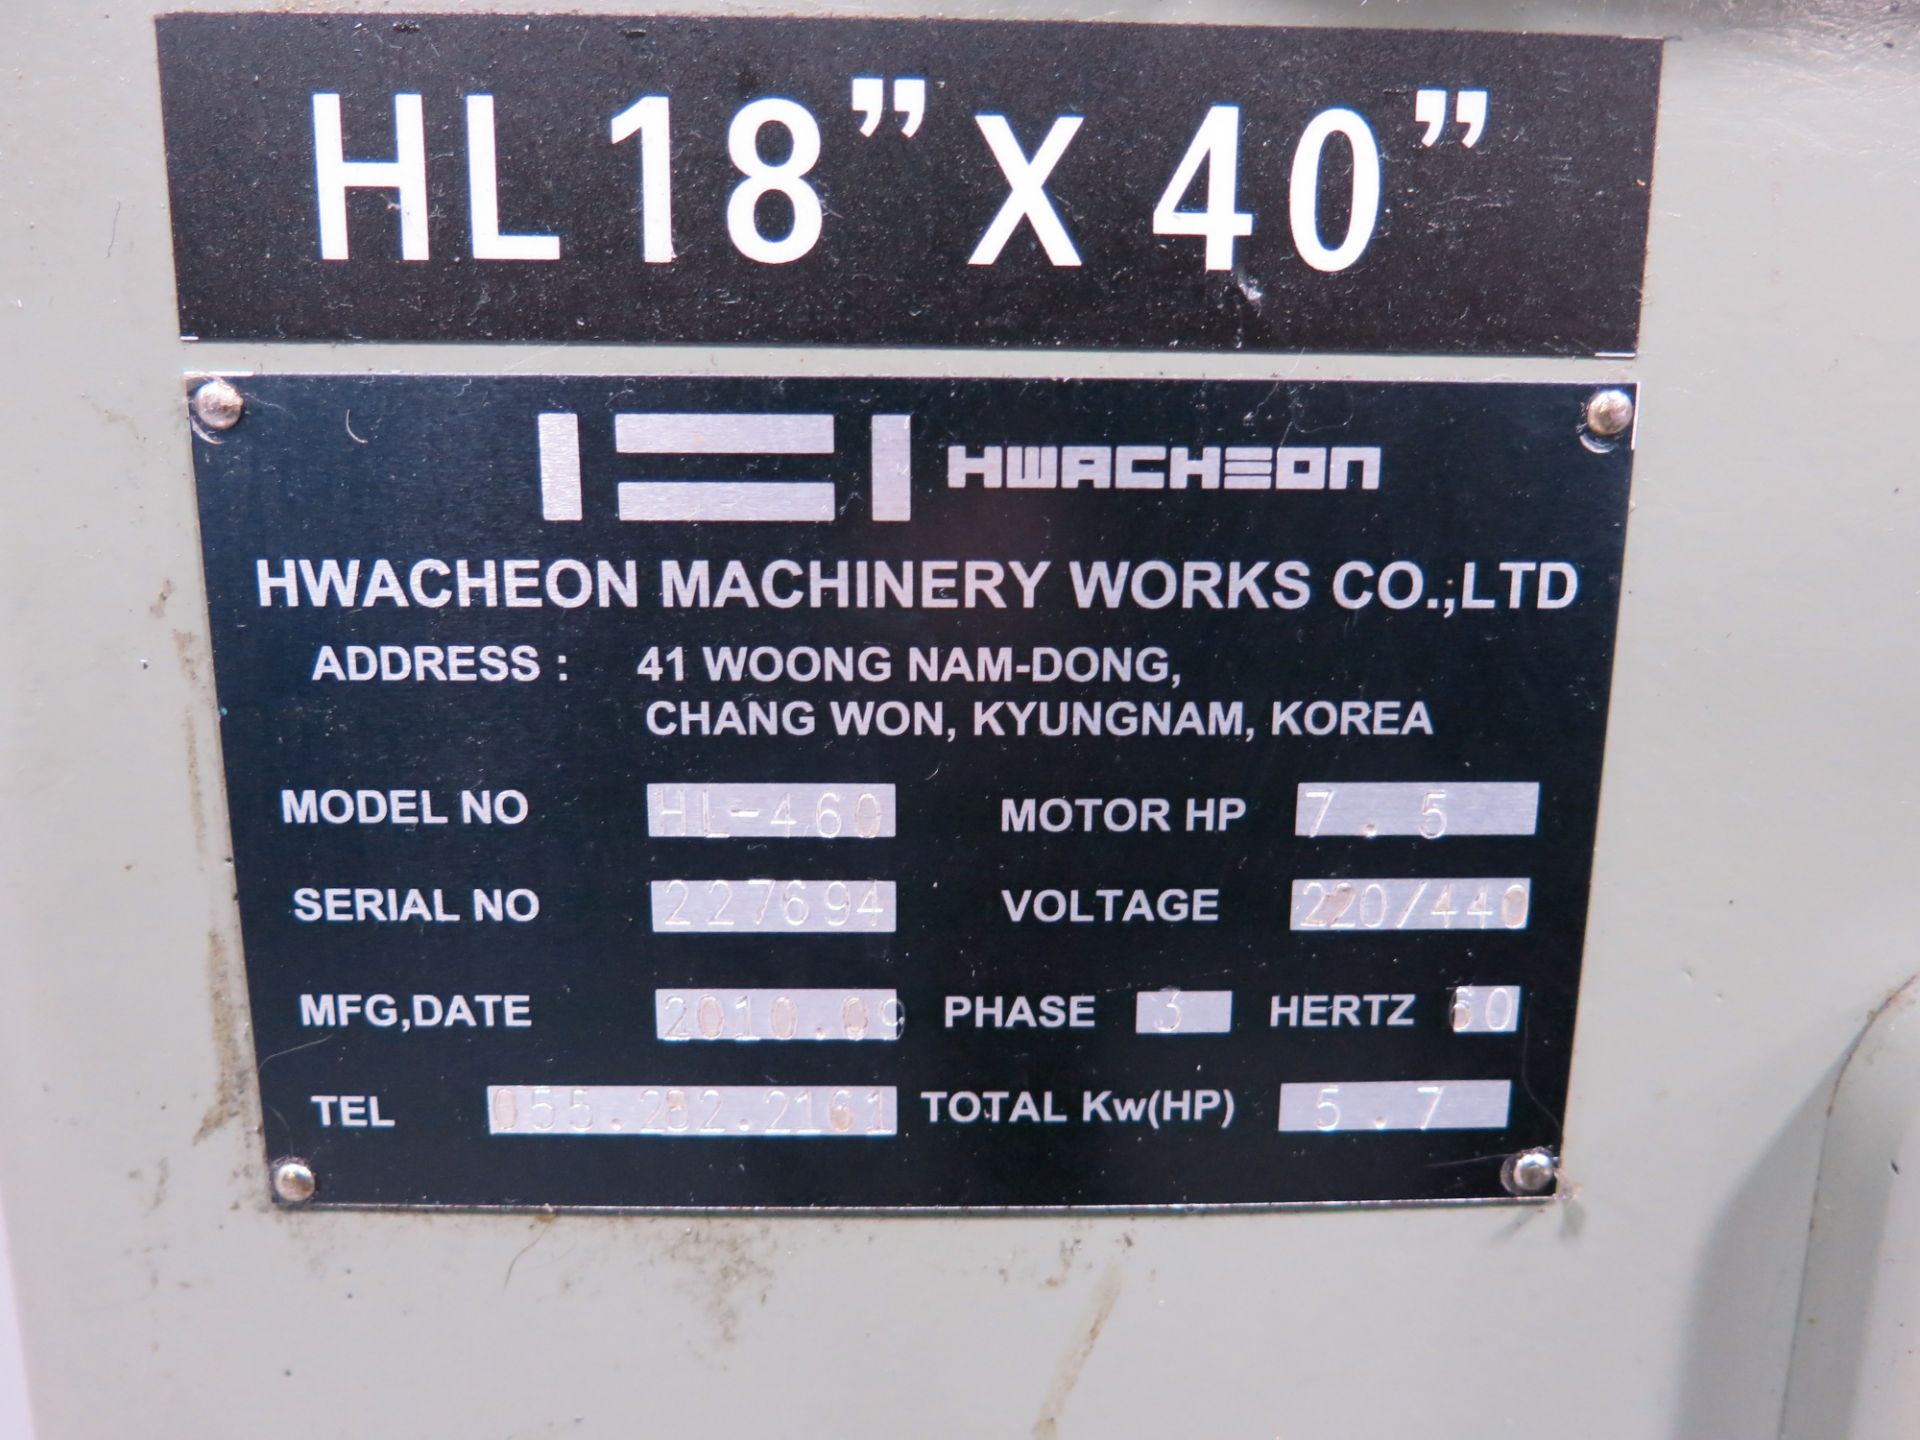 2010 Hwacheon 18" x 40" Lathe Model HL460 - Image 5 of 5